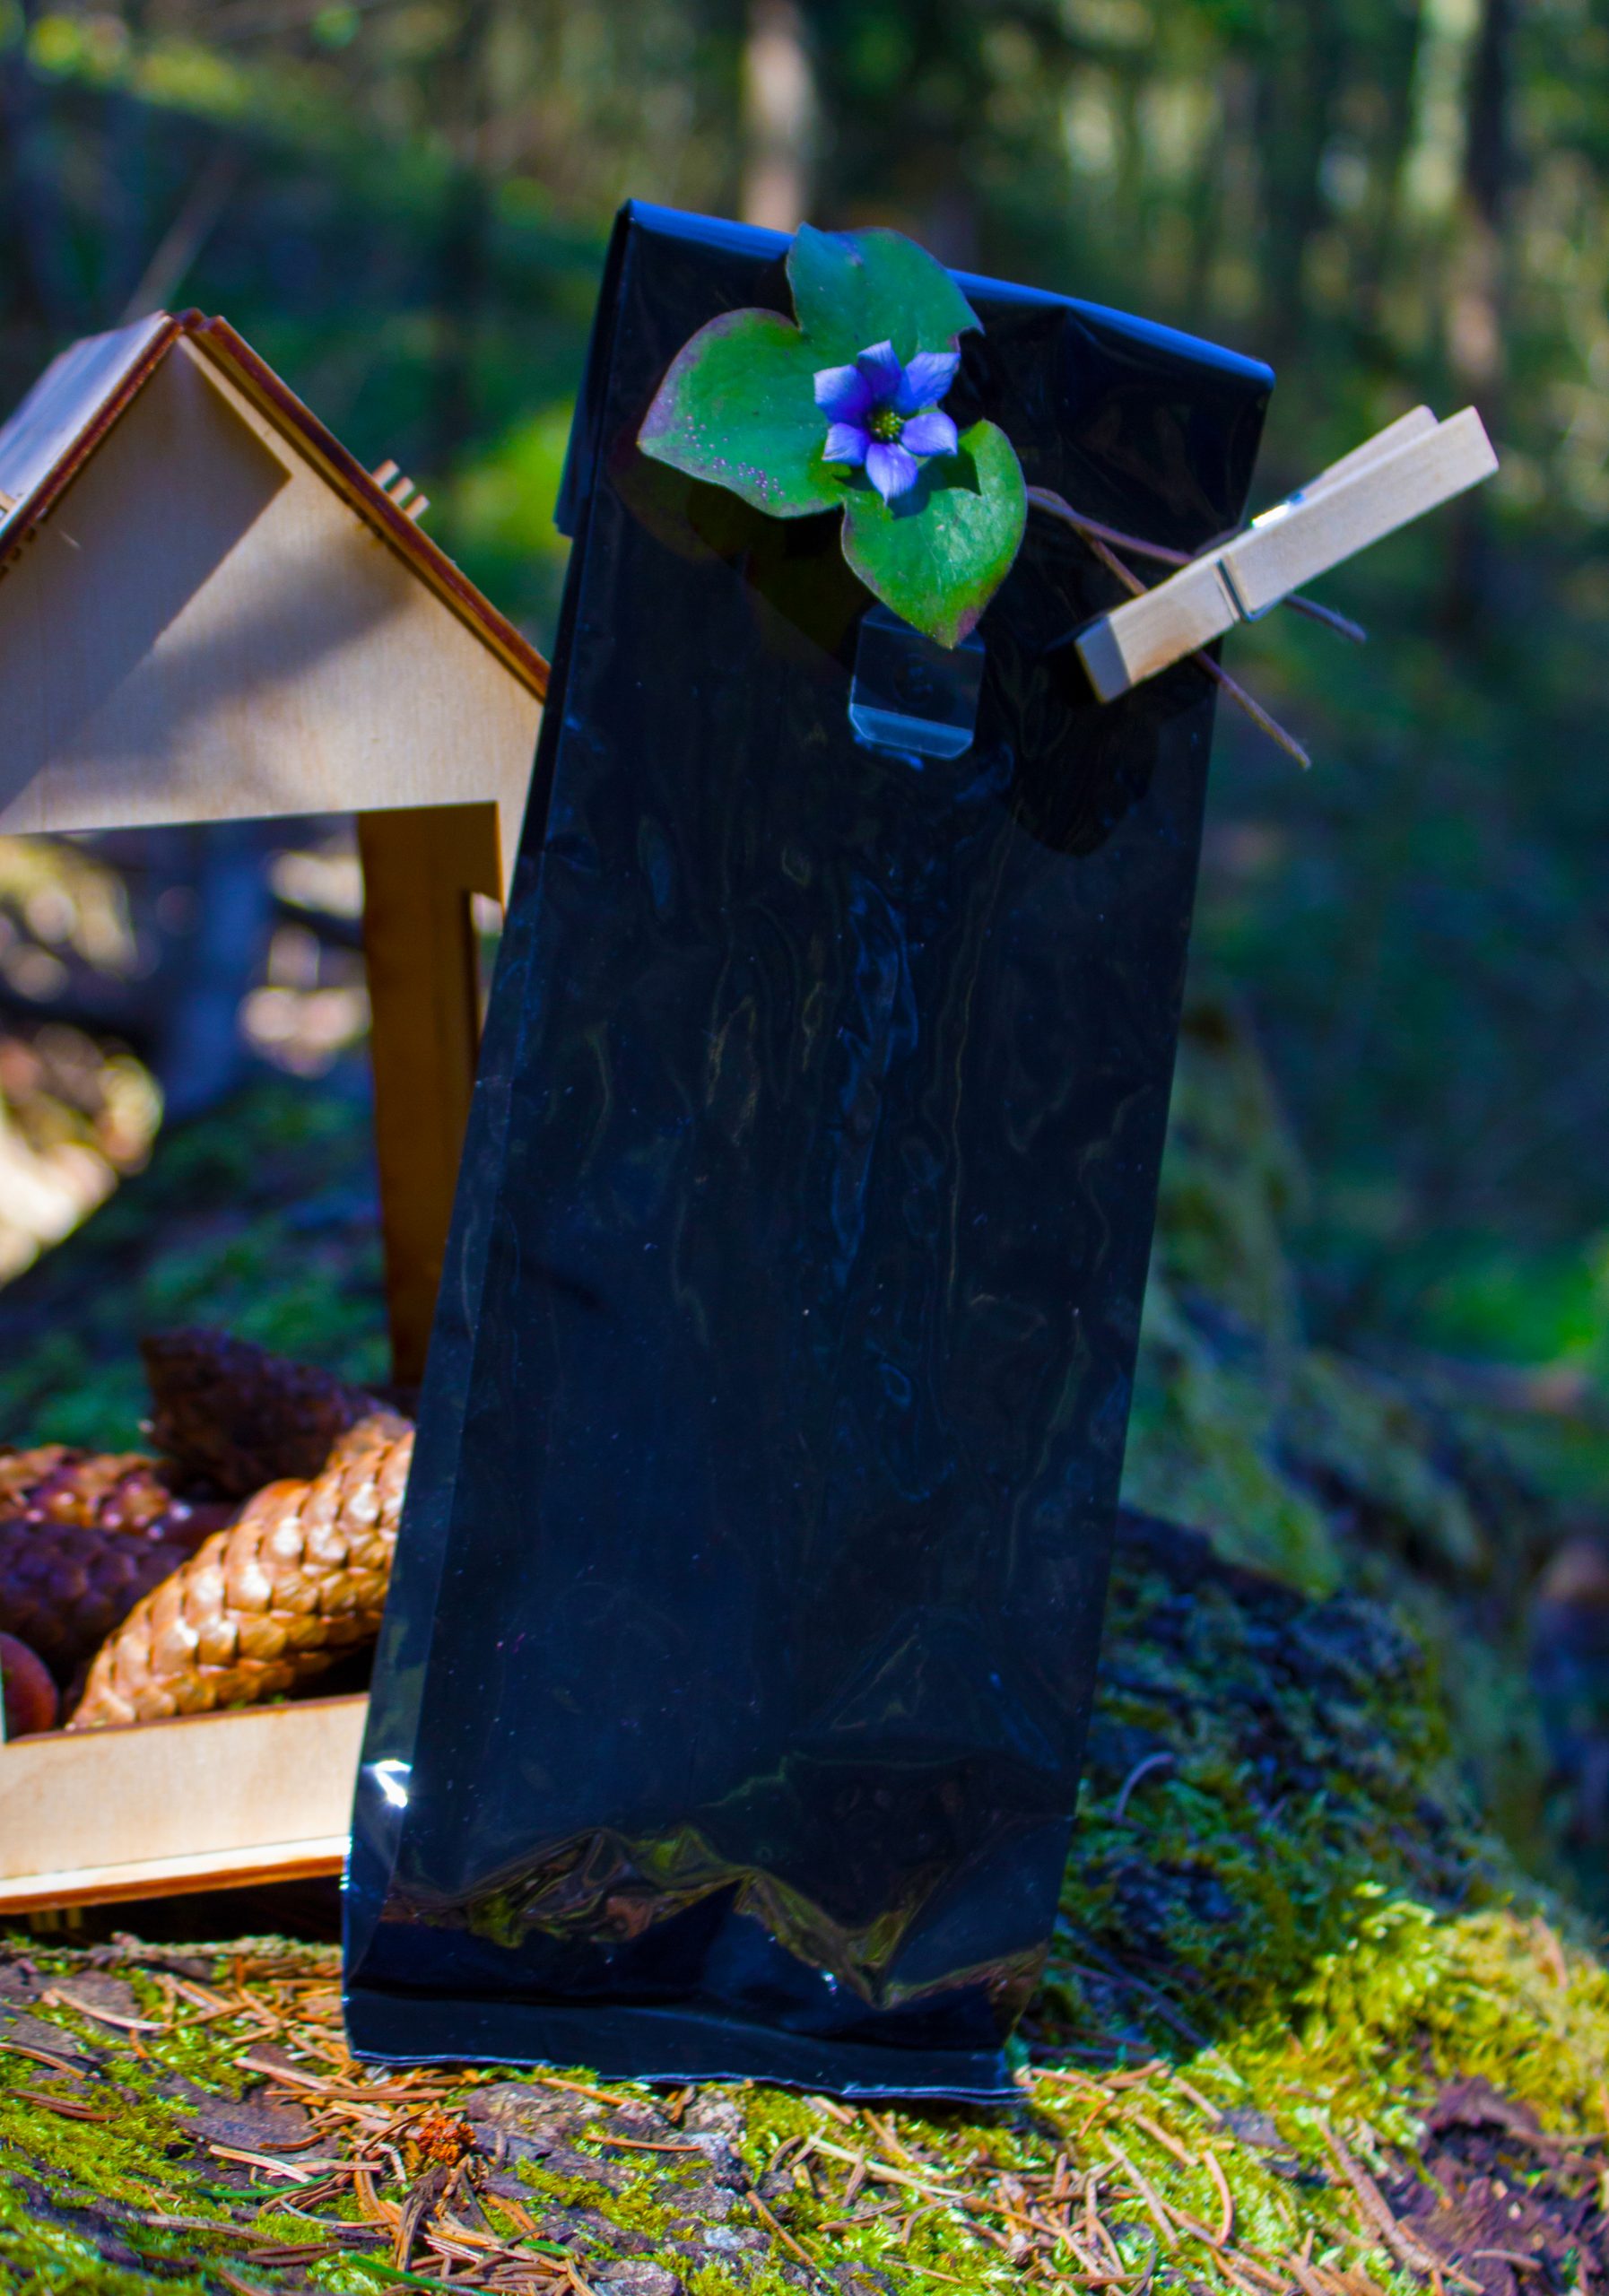 Juodas mobilusis telefonas, pritvirtintas prie medžio kamieno su spaustuku, ant jo uždėta mėlyna gėlė su žaliais lapais, fone matomas medinis paukščių namelis ir spygliuočių kankorėžiai.